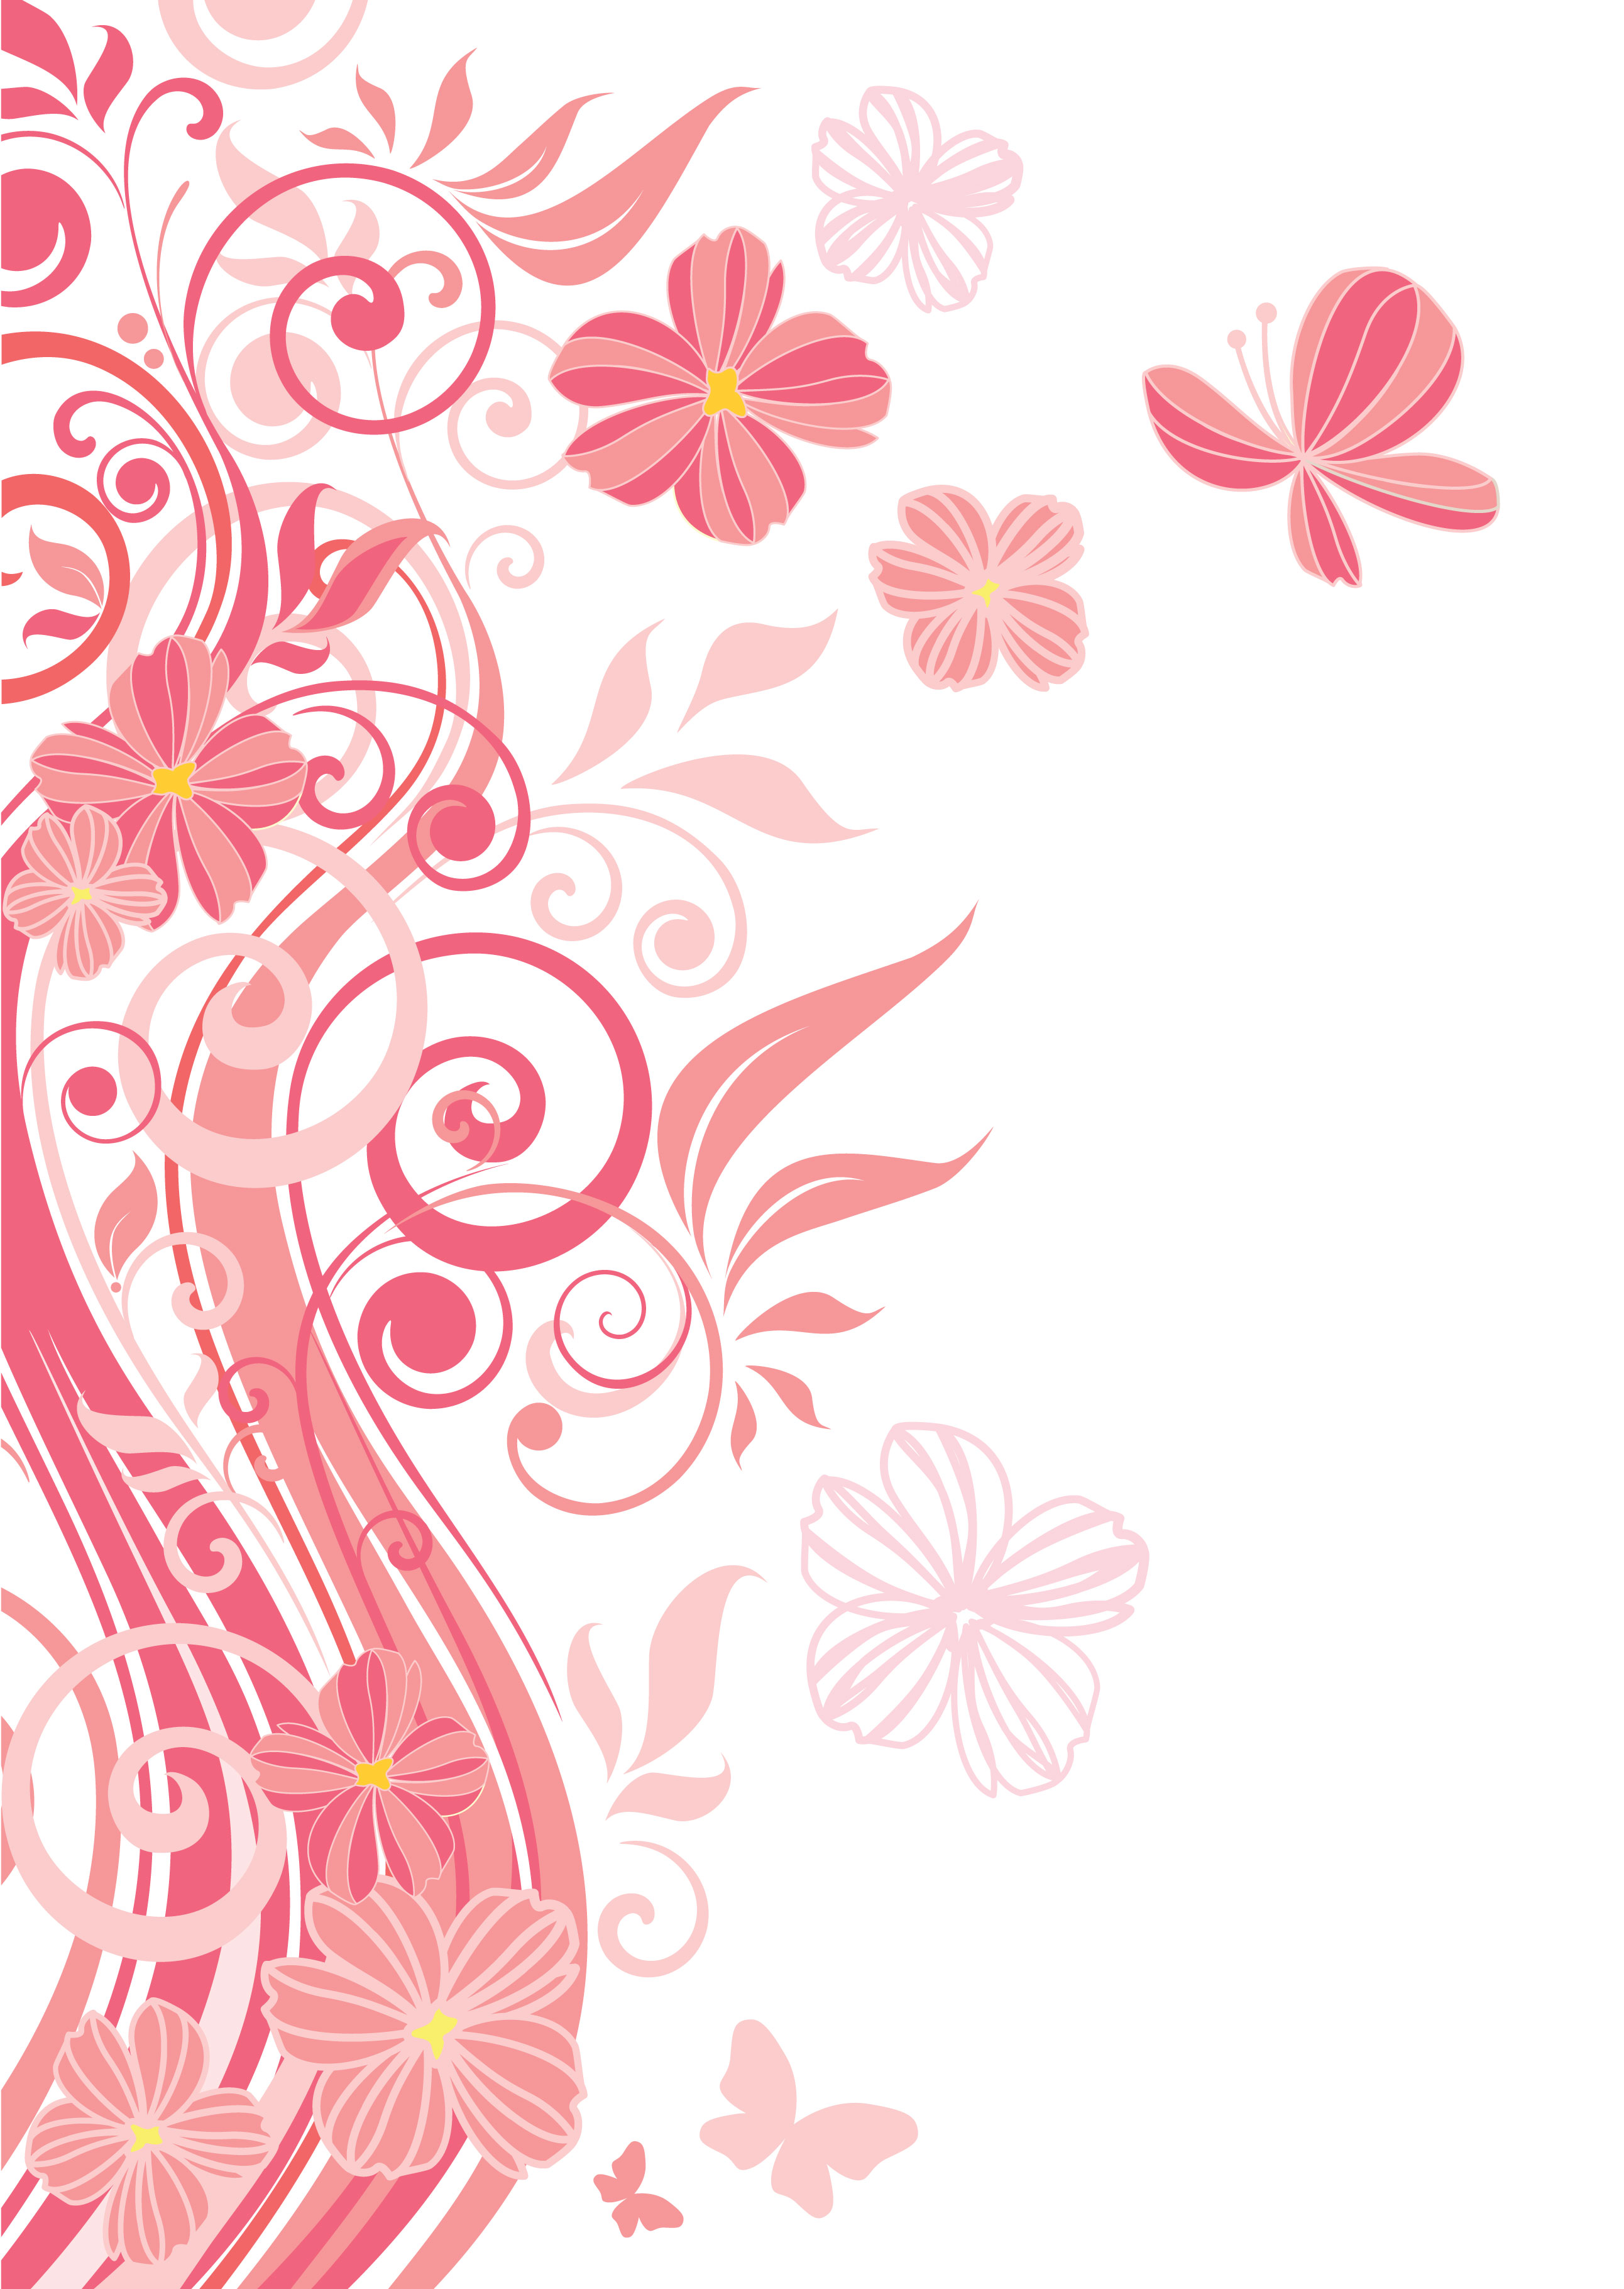 花のイラスト フリー素材 壁紙 背景no 9 ピンク 茎葉 蝶